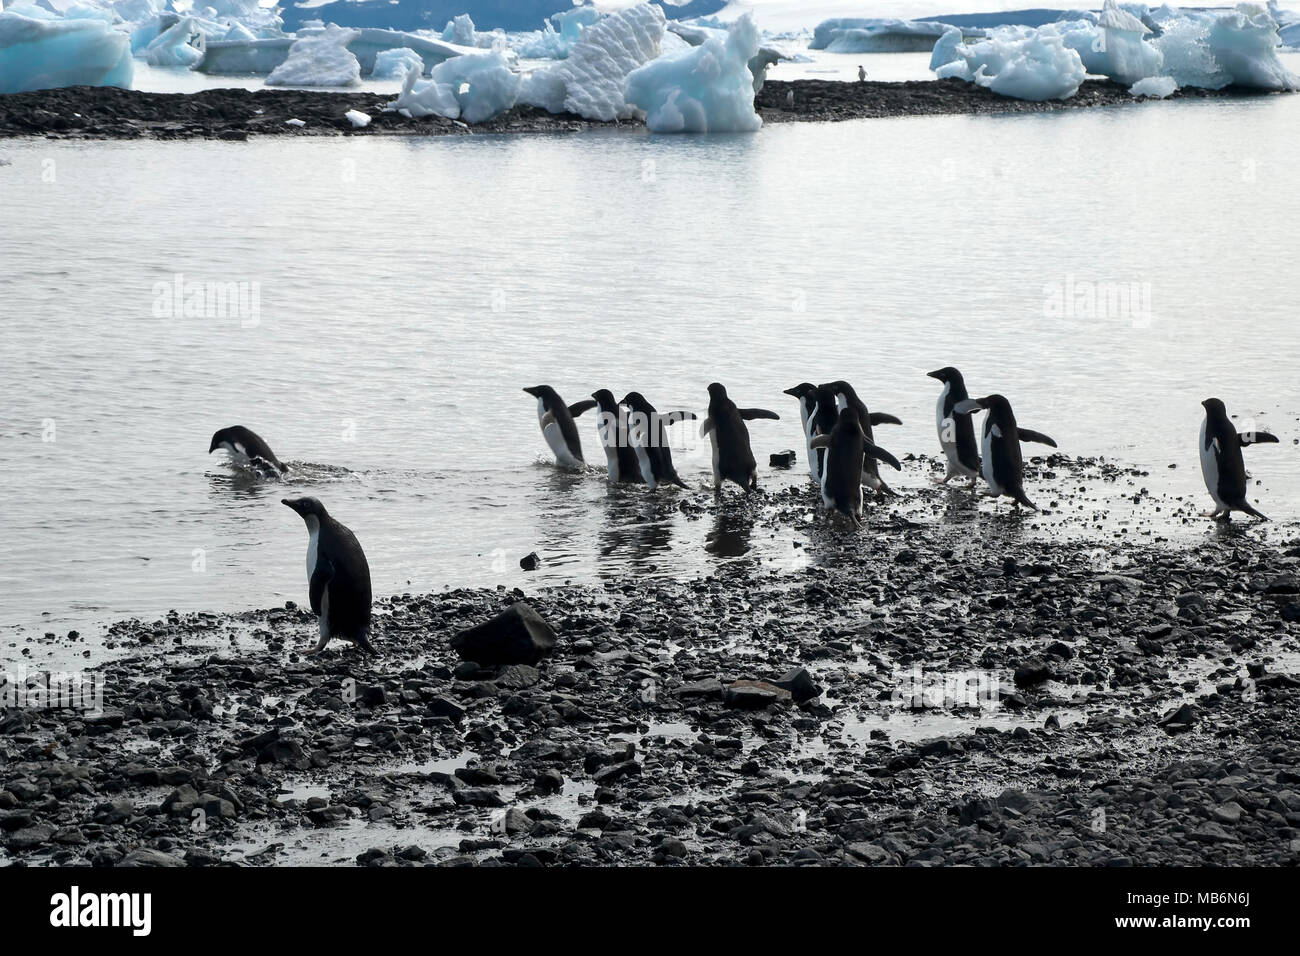 L'Antarctique l'Île du Diable, groupe d'Adelie penguin entrant dans l'eau avec bay rempli d'icebergs en arrière-plan Banque D'Images